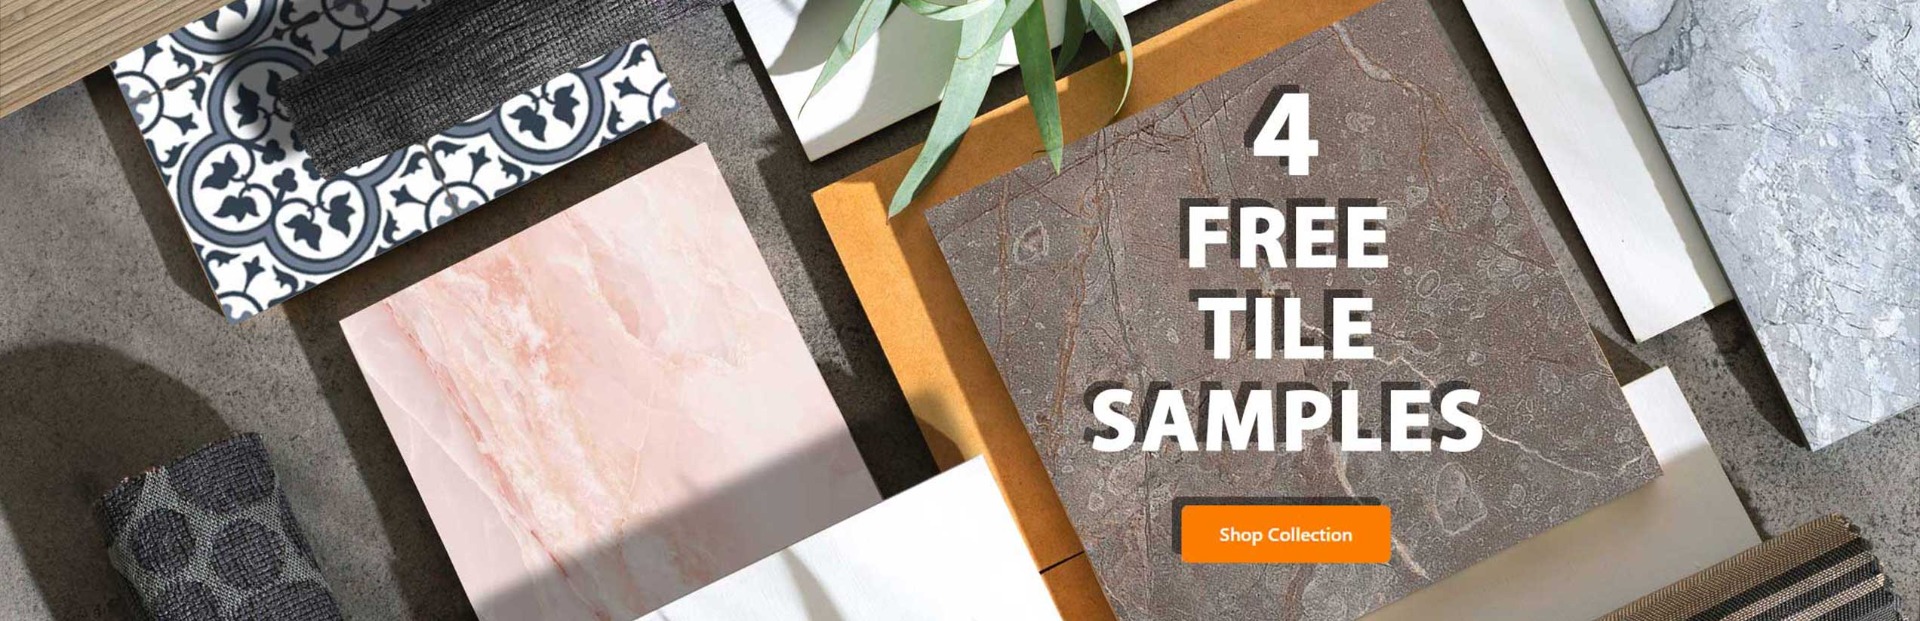 free tile sample banner